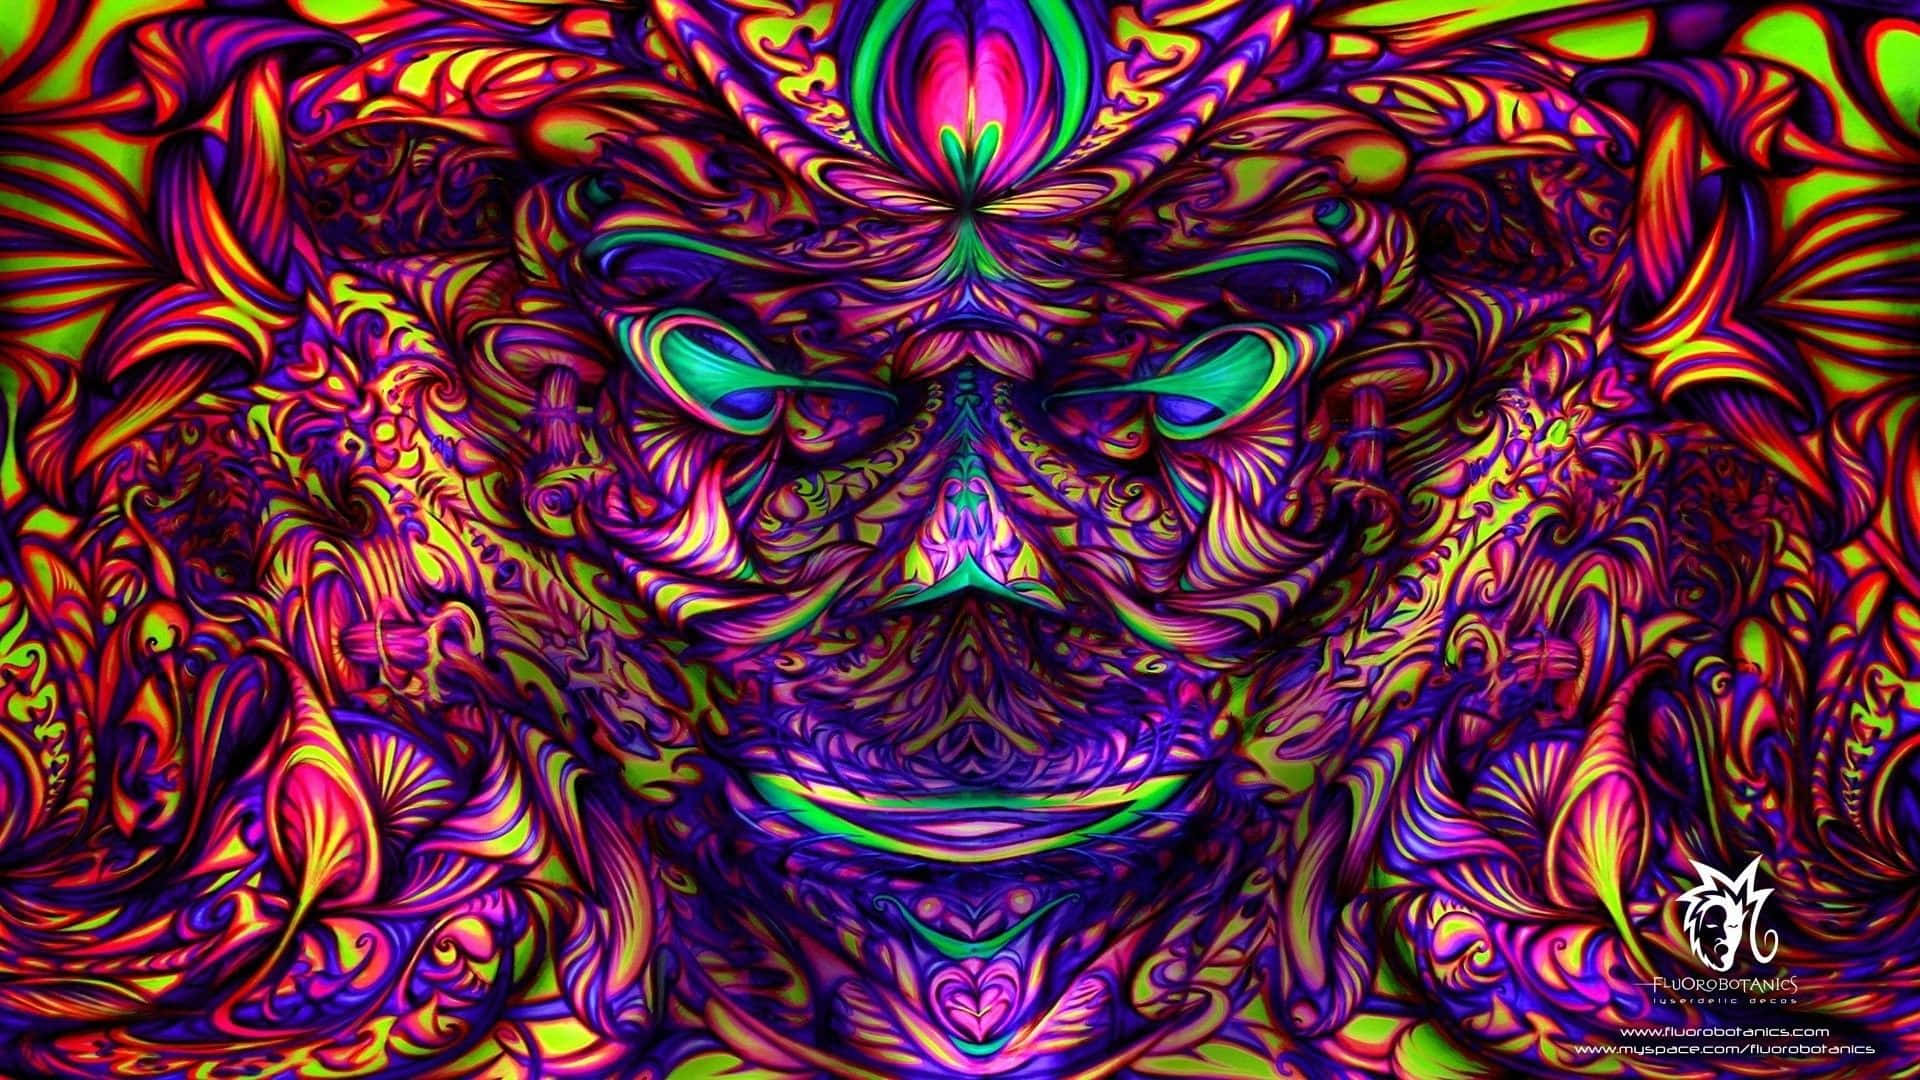 Unaimpresión De Arte Psicodélico De Colores Que Presenta El Rostro De Un Demonio Psicodélico. Fondo de pantalla